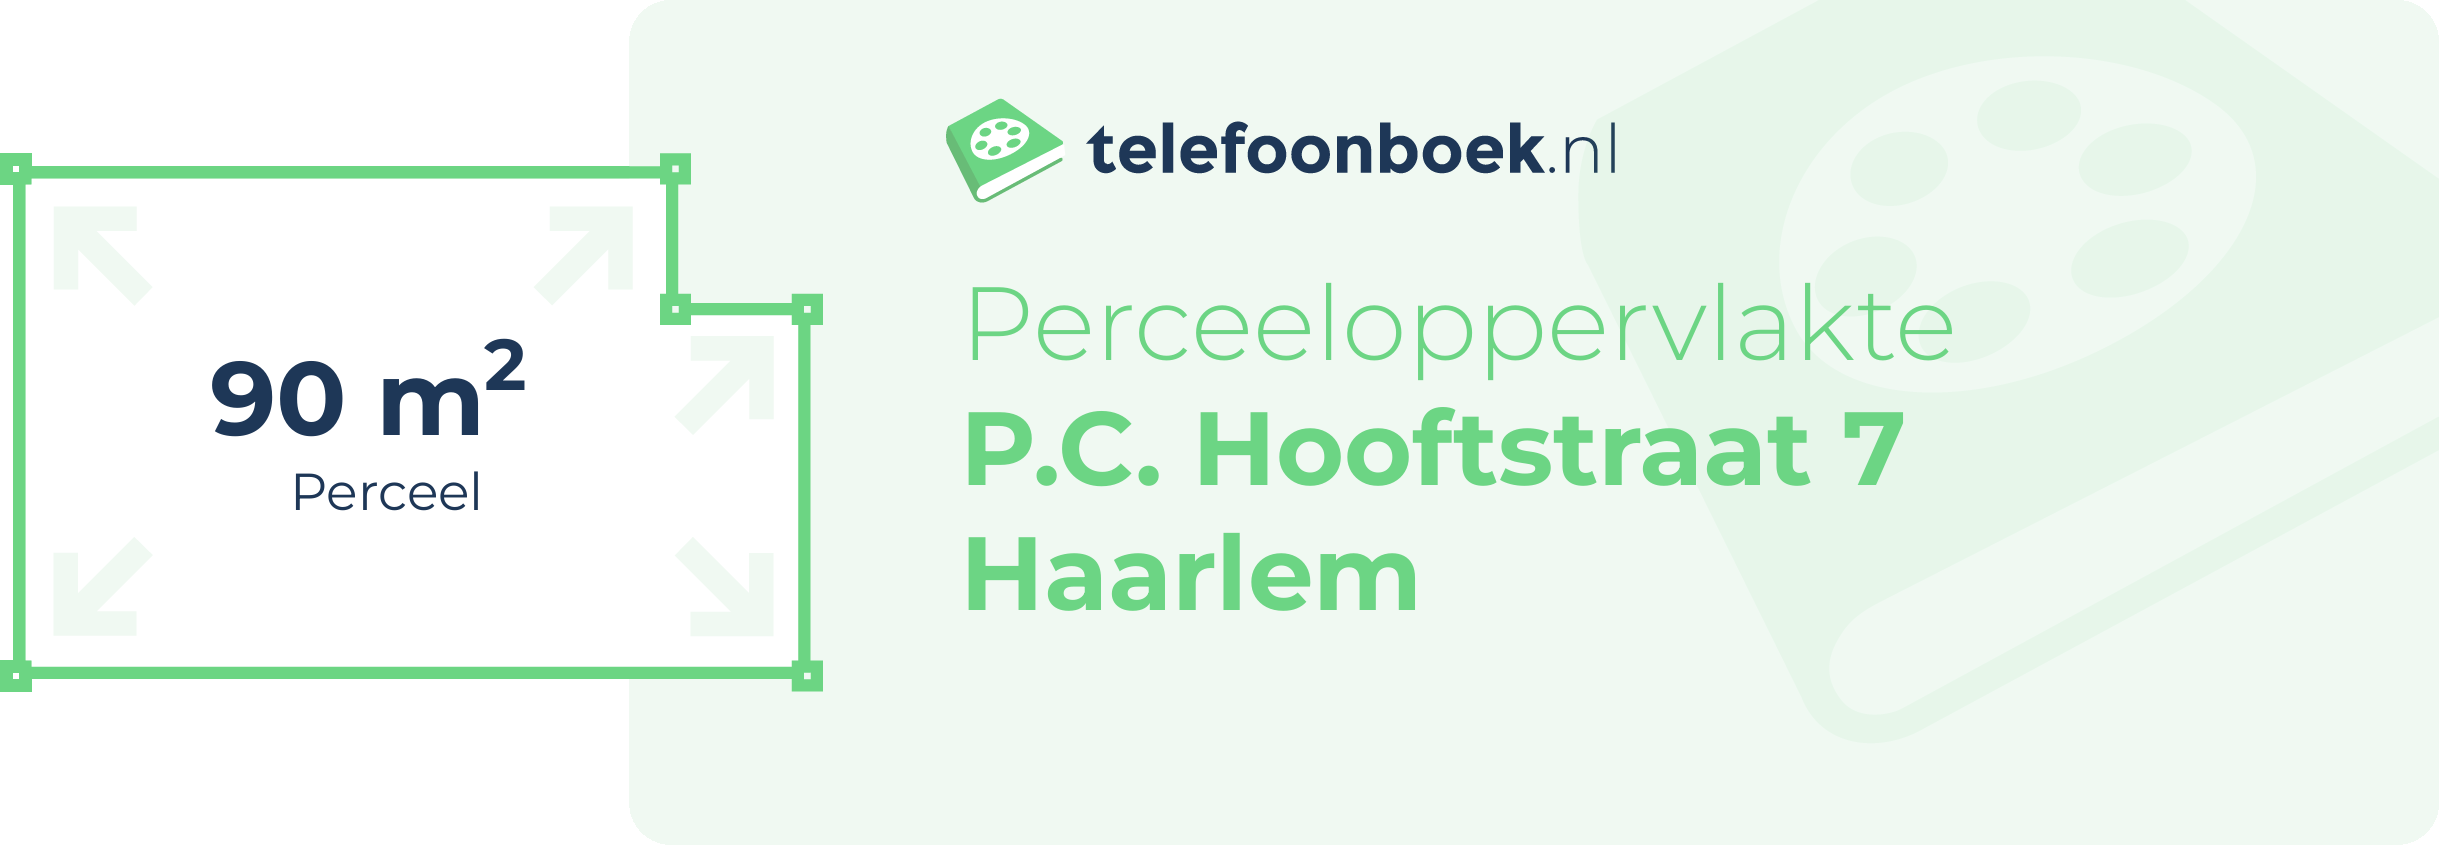 Perceeloppervlakte P.C. Hooftstraat 7 Haarlem